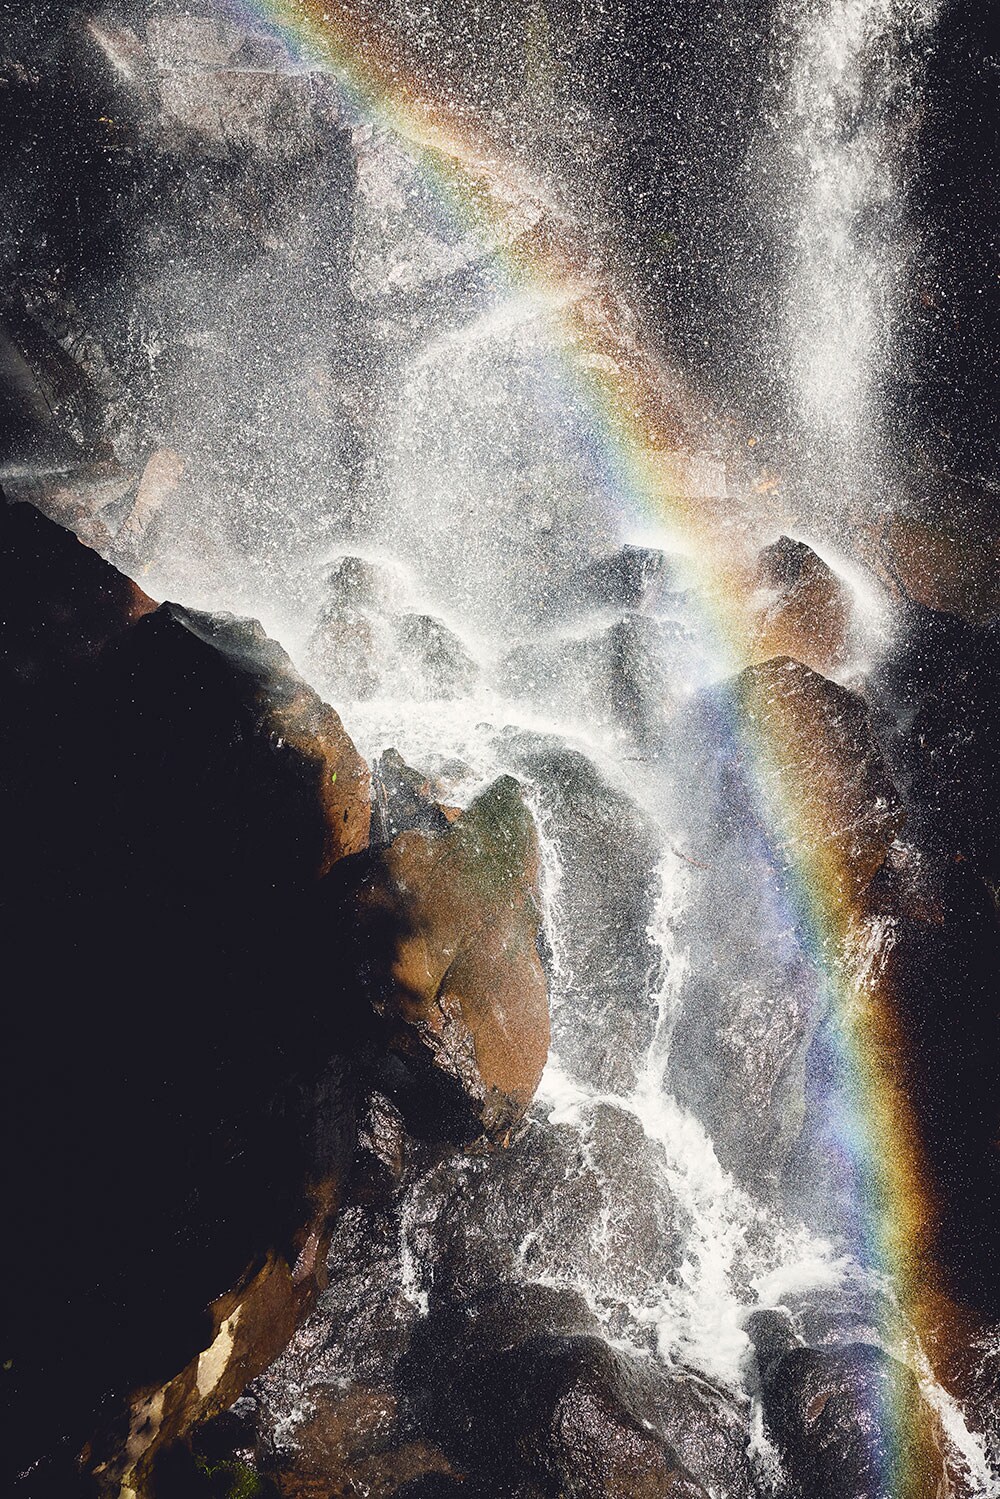 キラキラと輝く水しぶきに虹がかかる源流の滝。